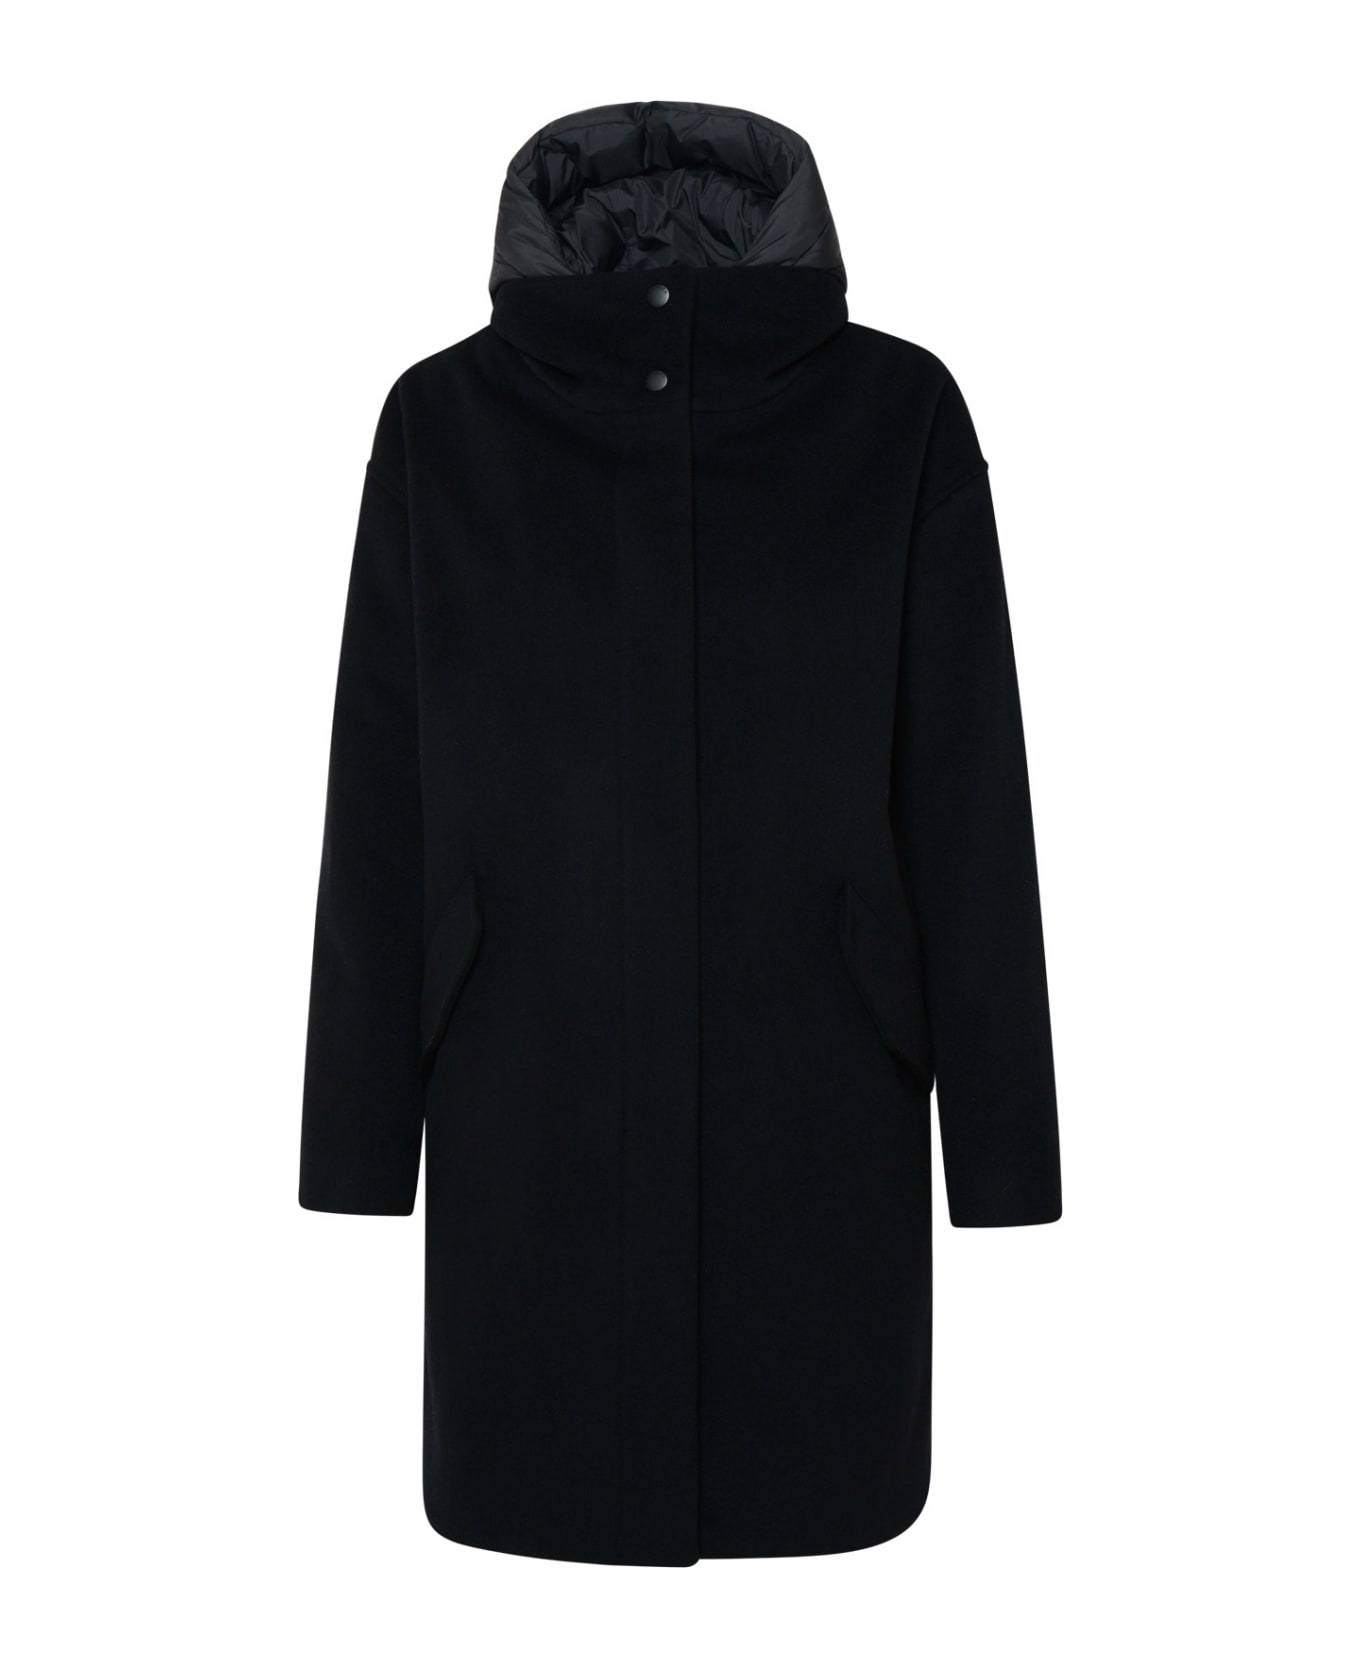 Woolrich 'kuna' Parka In Black Cashmere Blend - Black コート